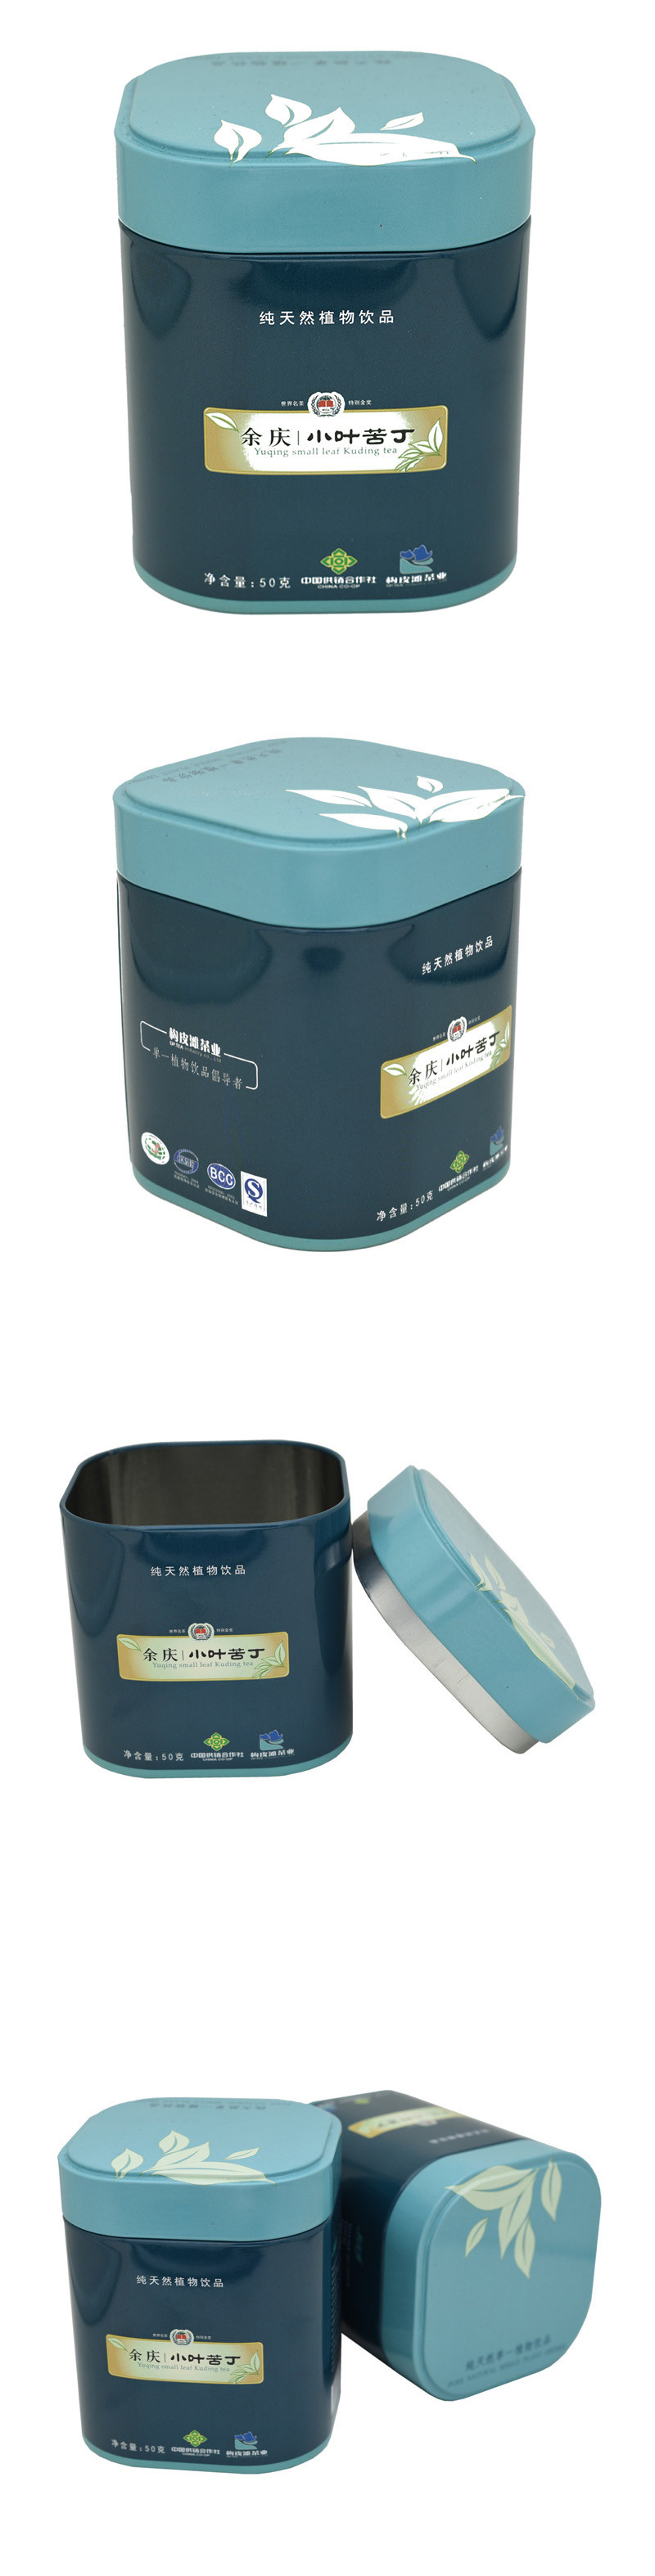 茶叶罐铁盒设计